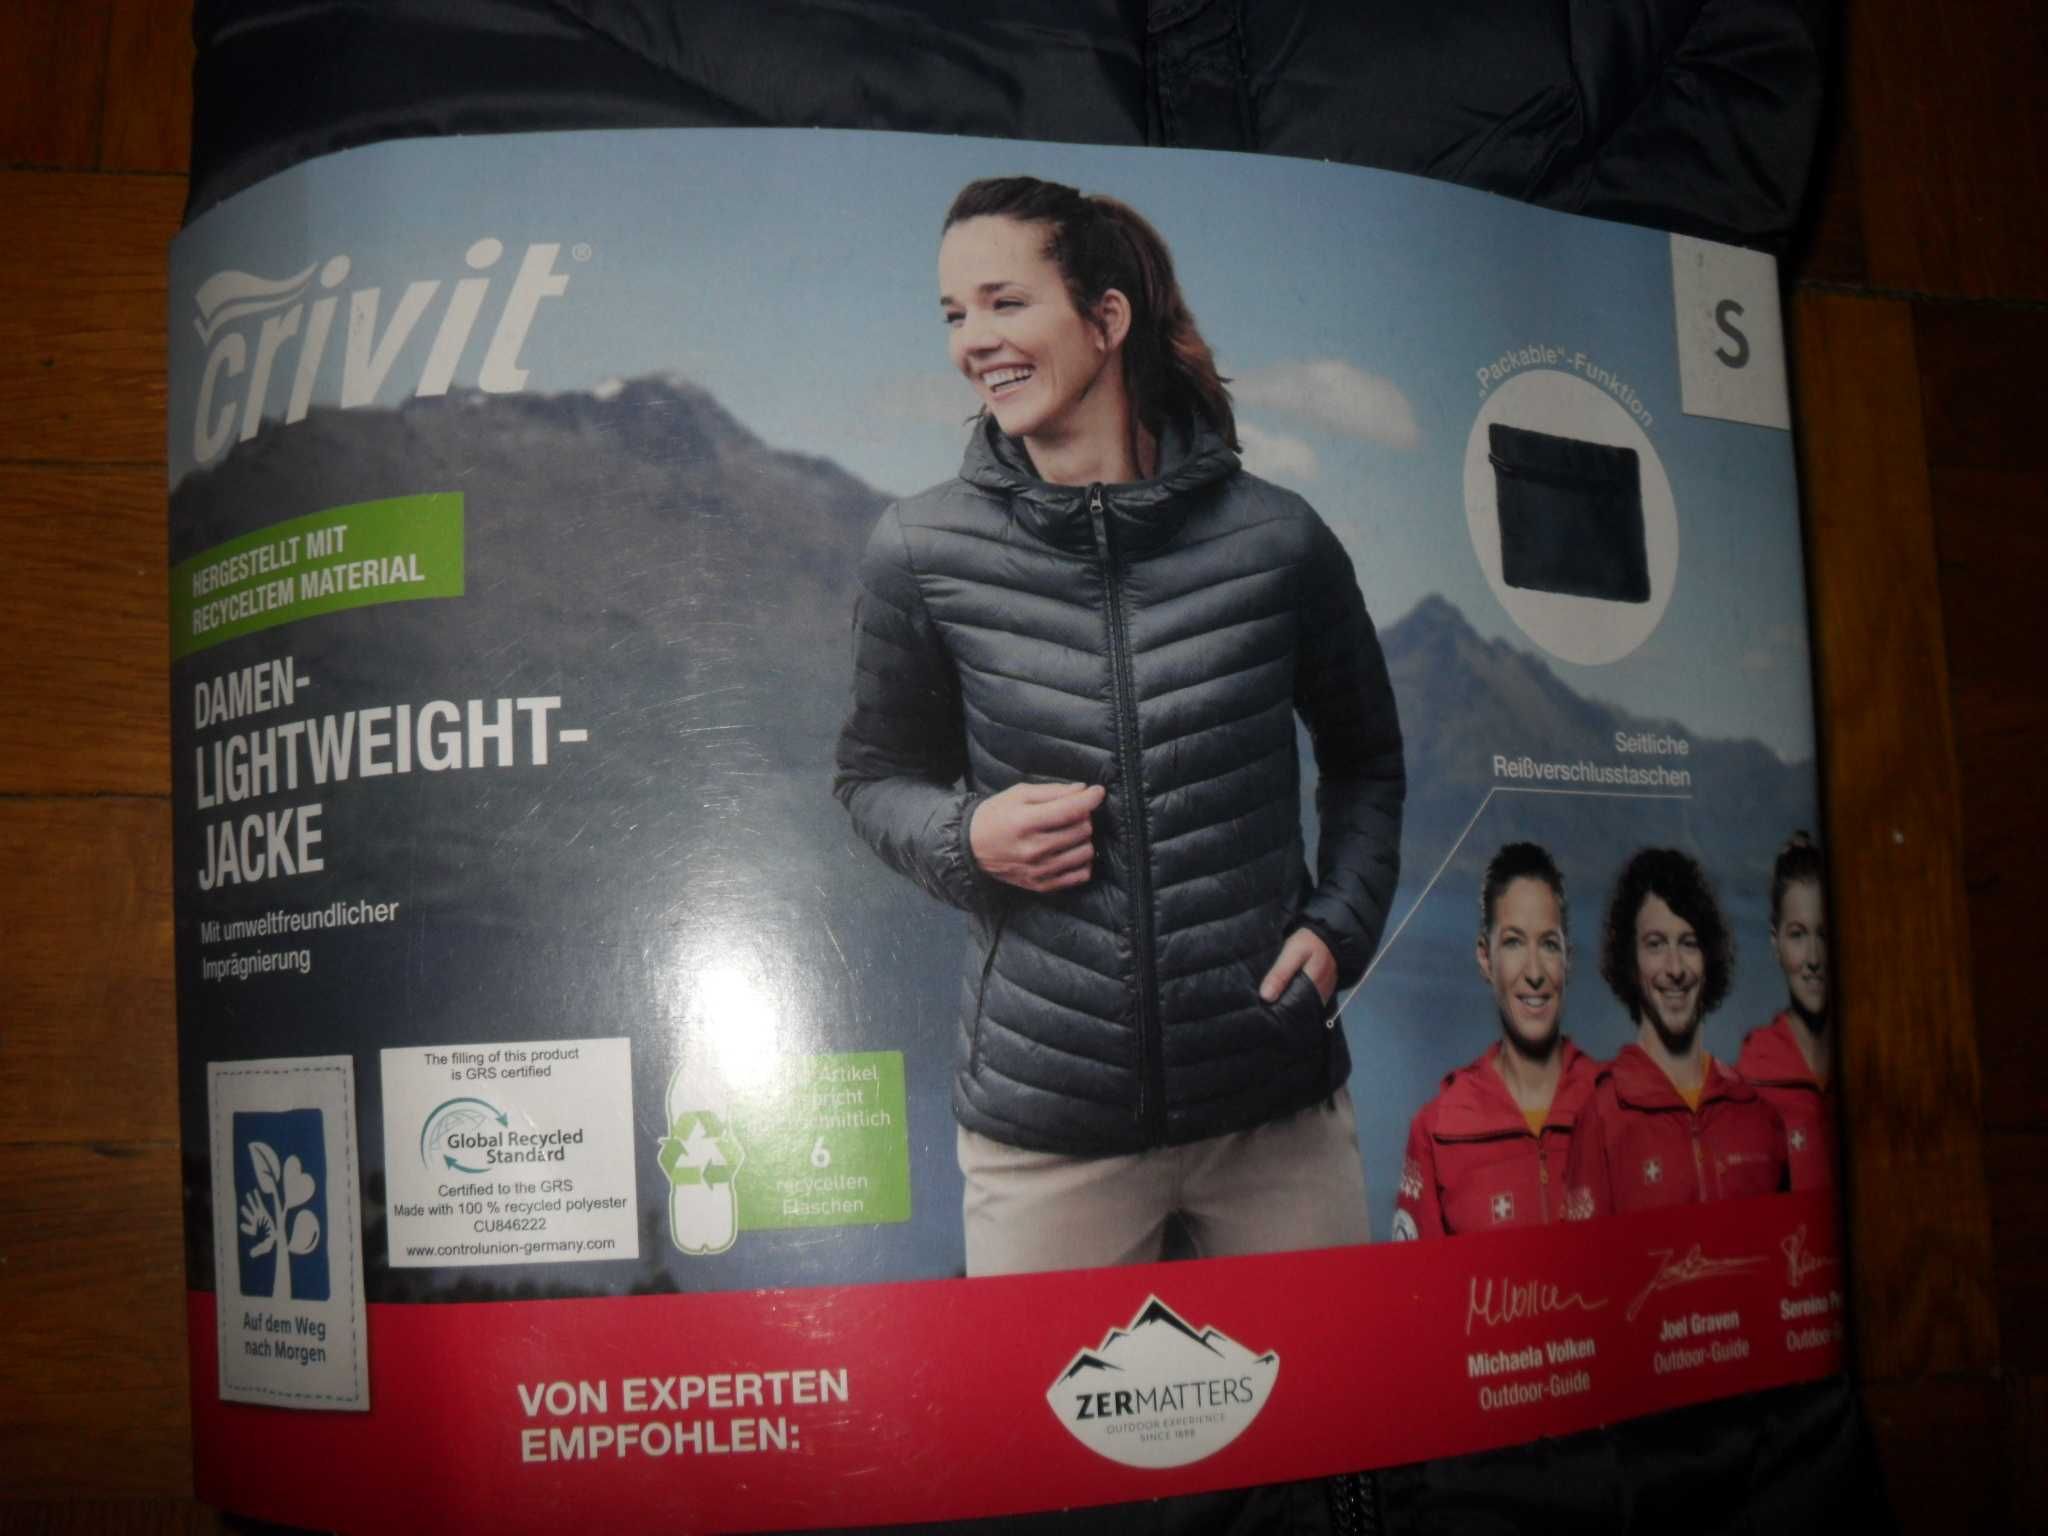 Куртка-ветровка CRIVIT® трекинговая ( Германия ) , размер 36-38 ( S )